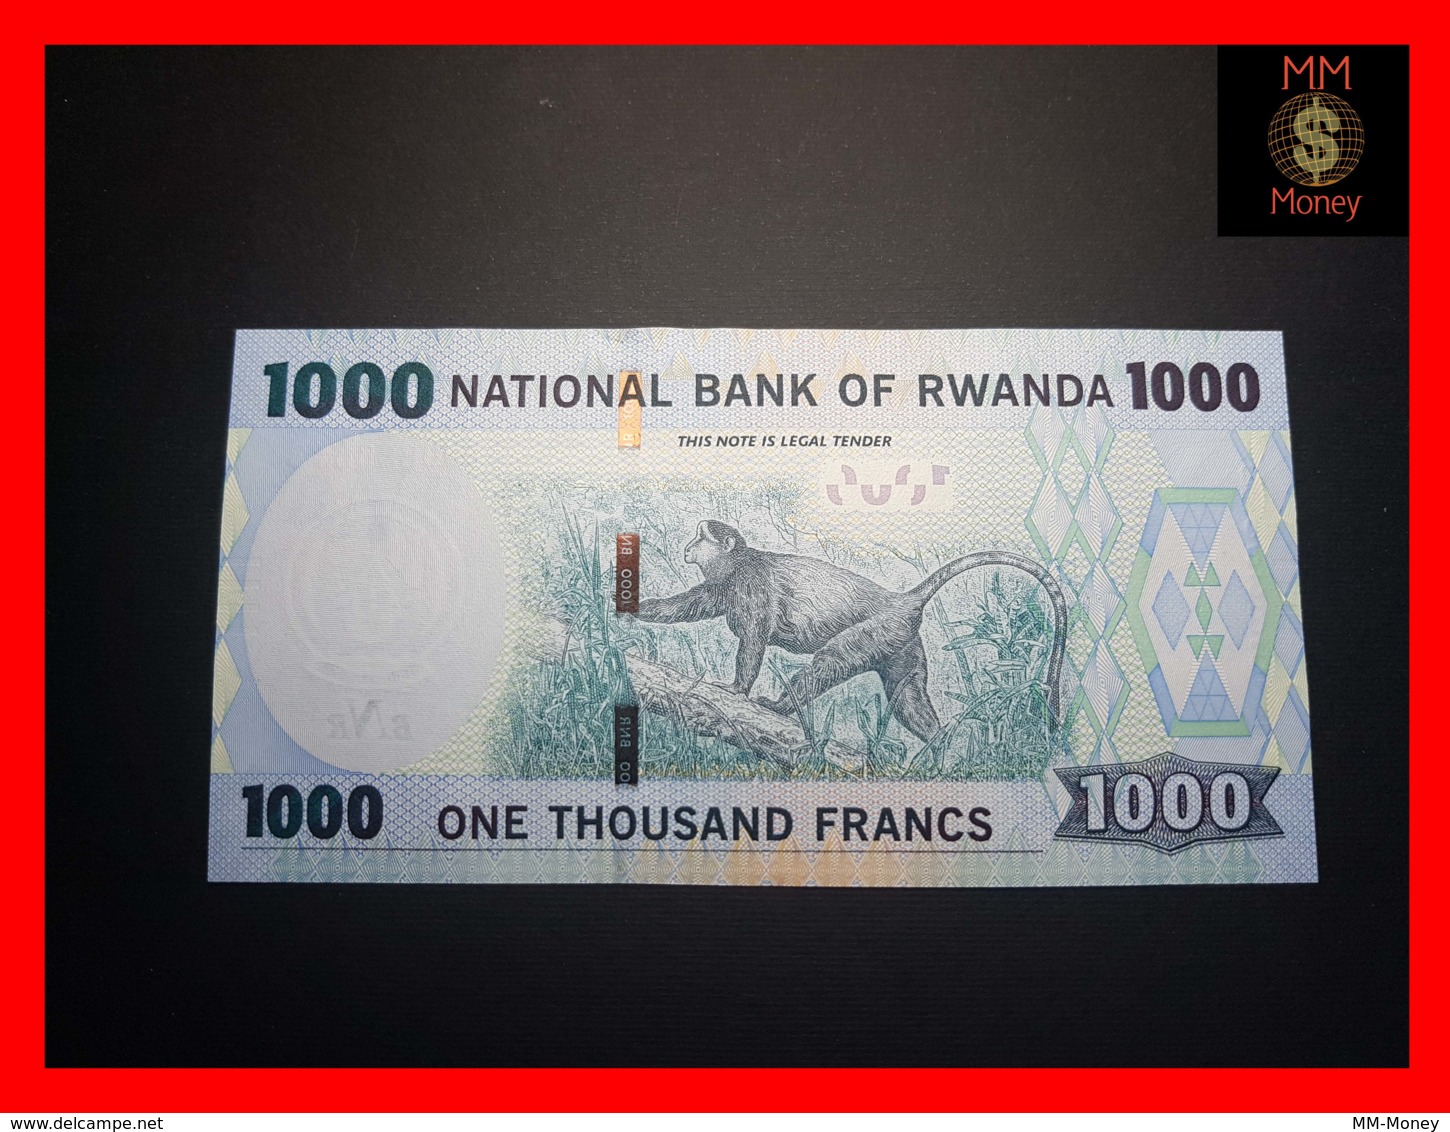 Rwanda 1000 Francs 2015 P39 banknote UNC 